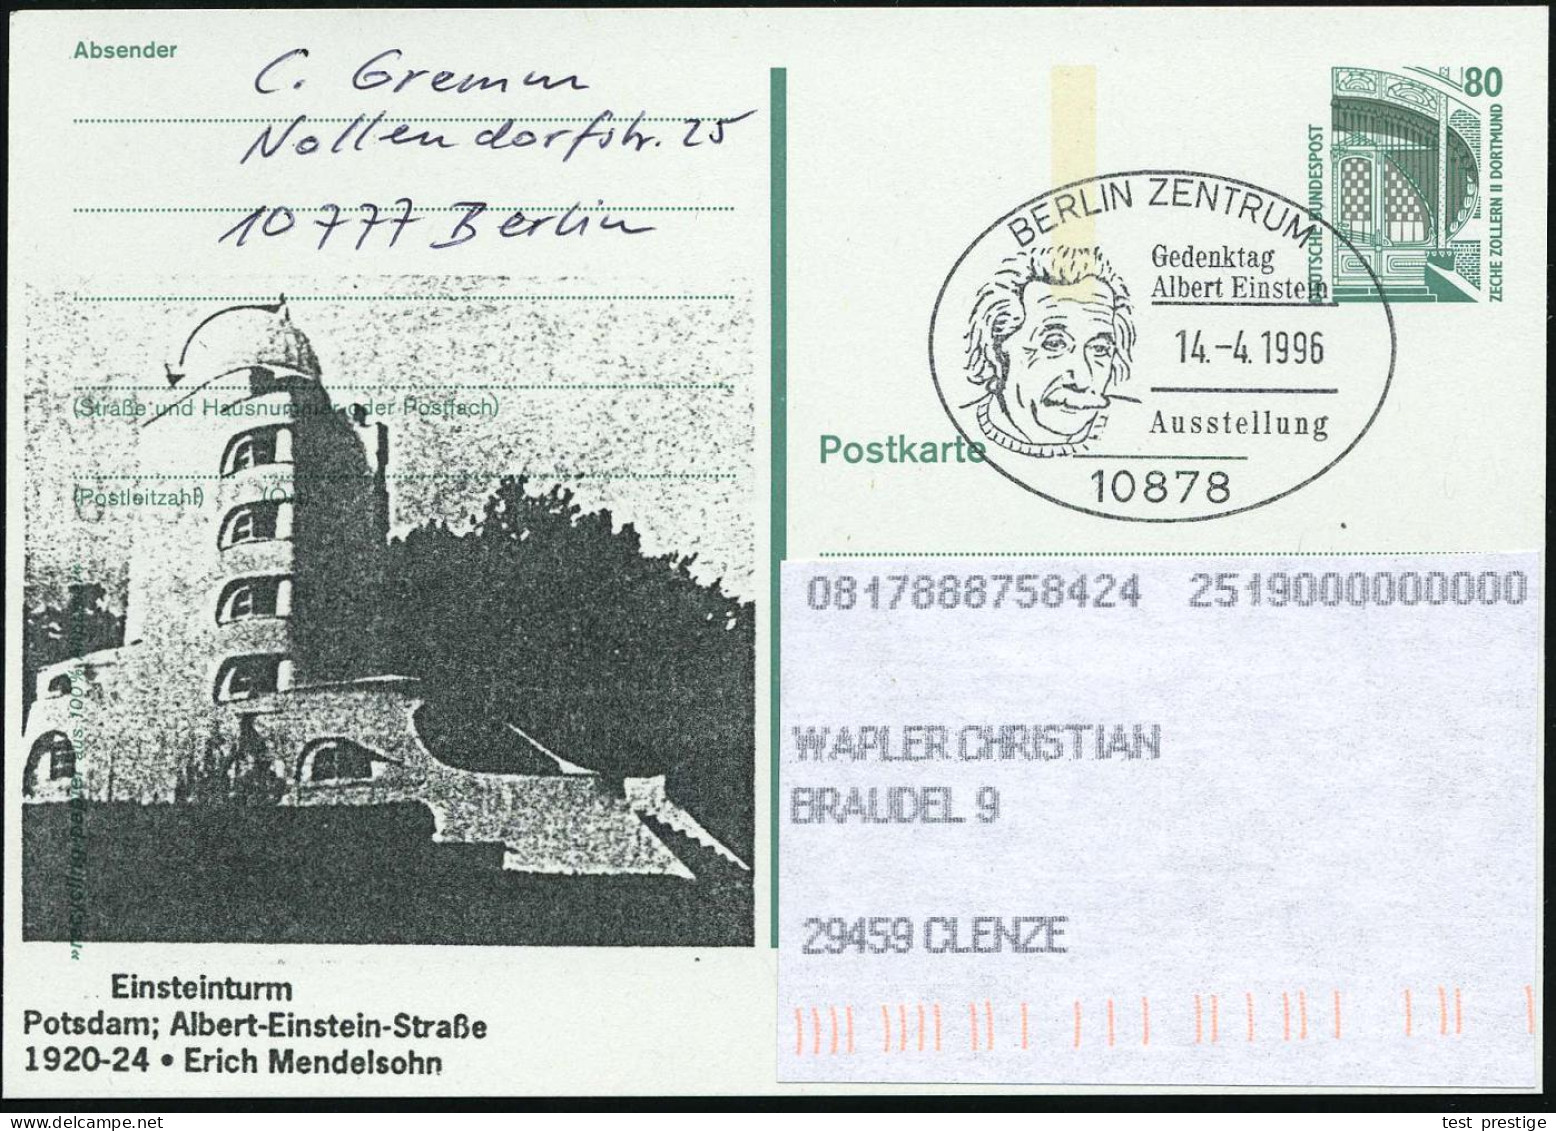 10878 BERLIN-ZENTRUM/ Gedenktag/ Albert Einstein/ Ausstellung 1996 (14.4.) SSt = Kopfbild Einstein Auf Amtl. P 80 Pf. Ze - Astronomie